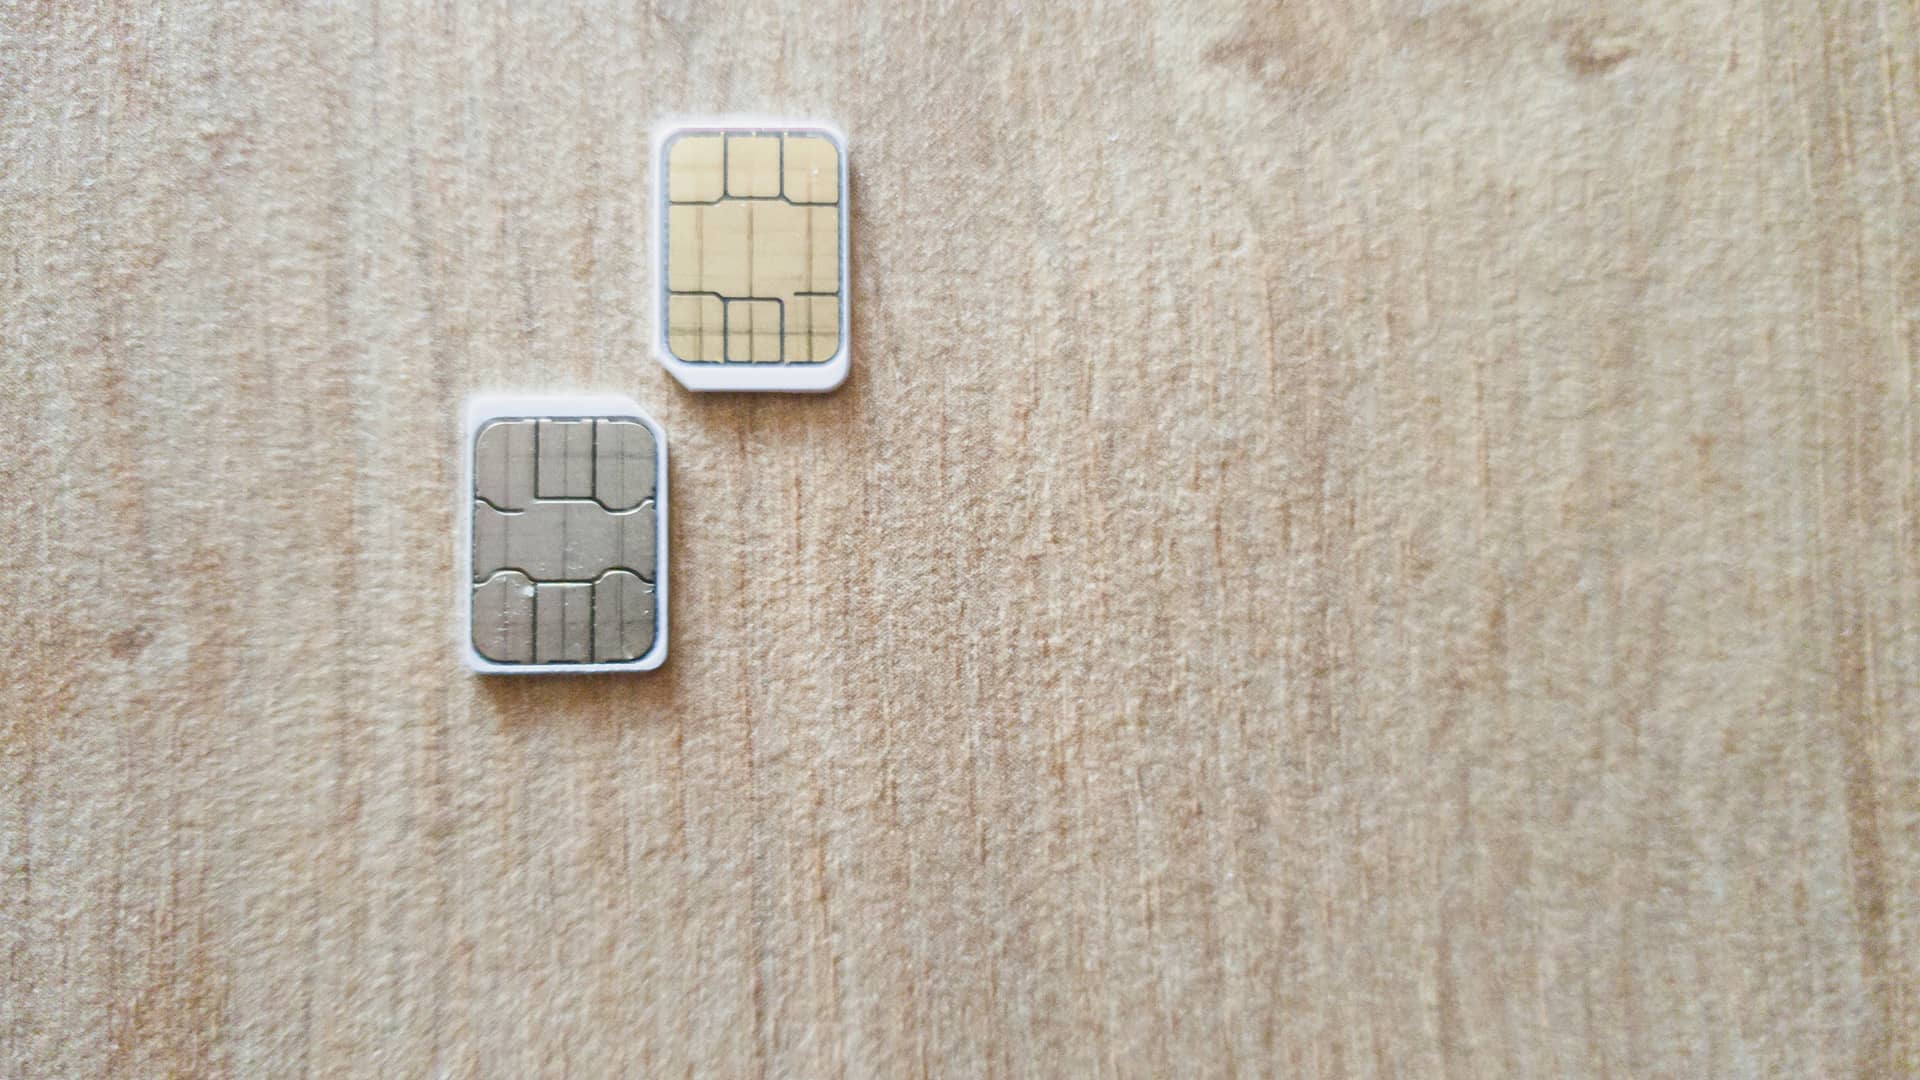 Dos tarjetas micro sim simbolizan duplicado sim